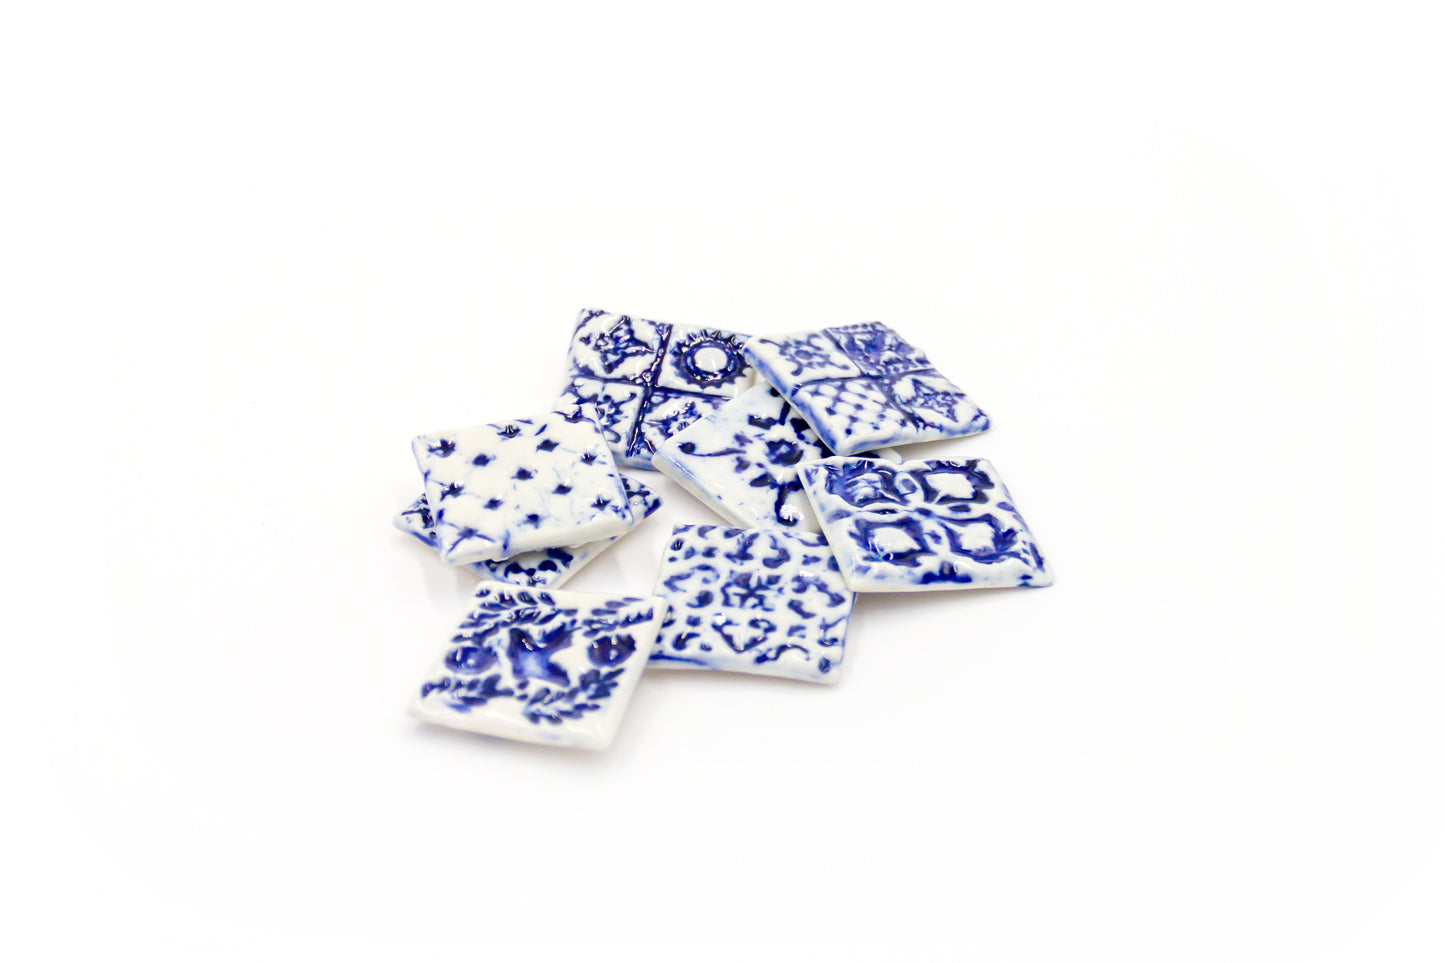 Kafelki magnesy porcelanowe w stylu azulejos